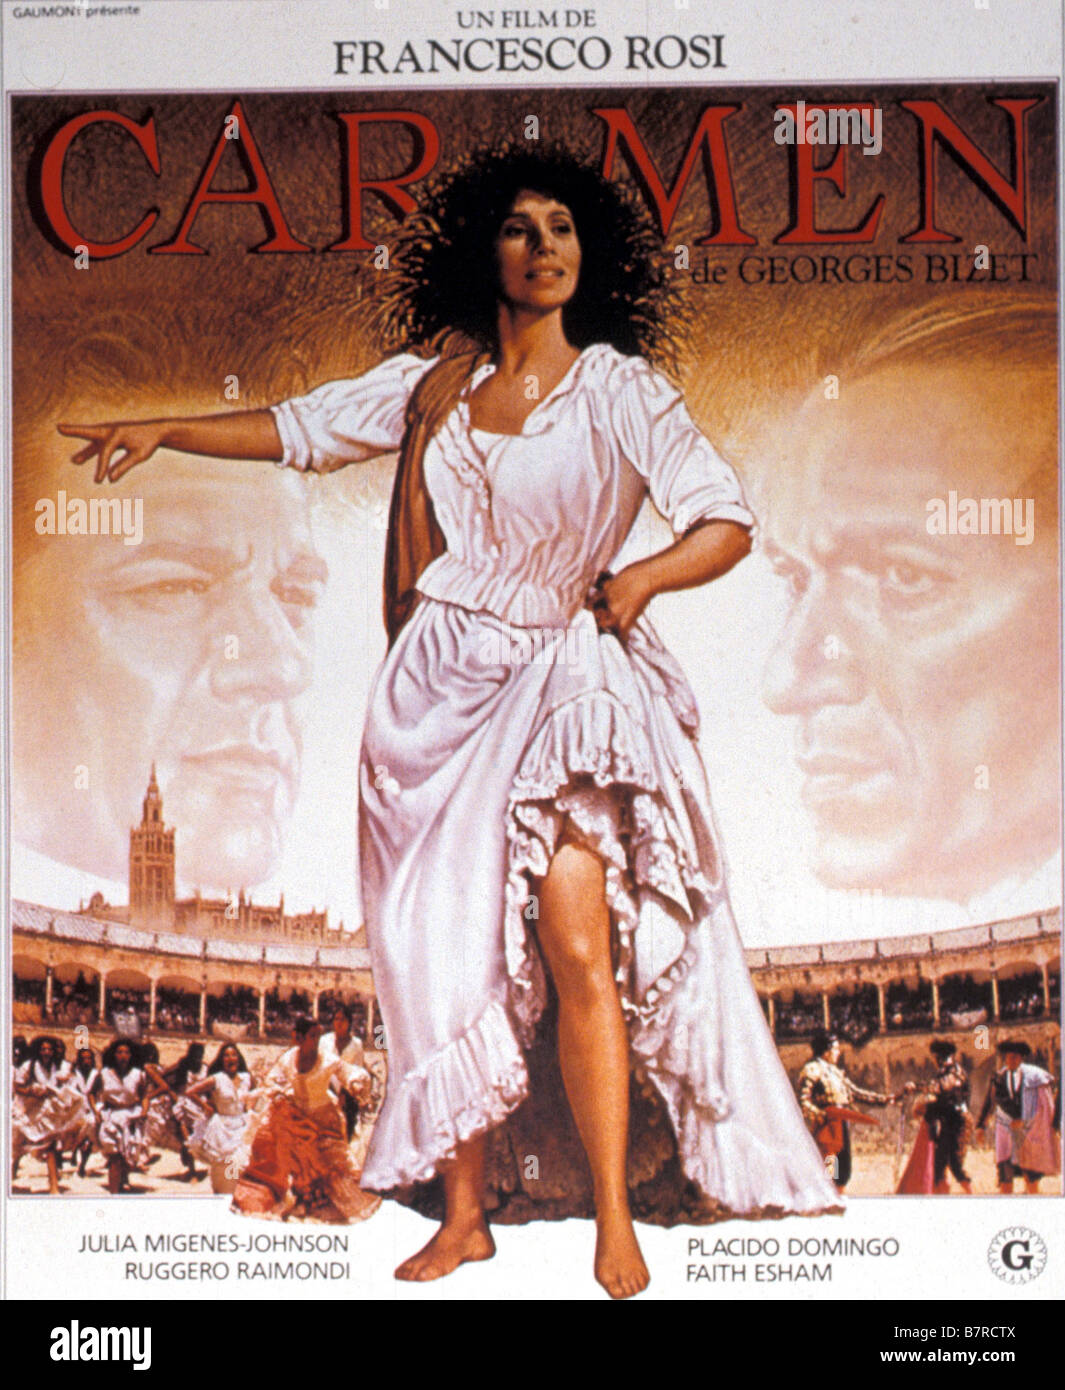 Carmen carmen Année 1984 France Italy Julia Migenes affiche poster Réalisateur Francesco Rosi Stock Photo